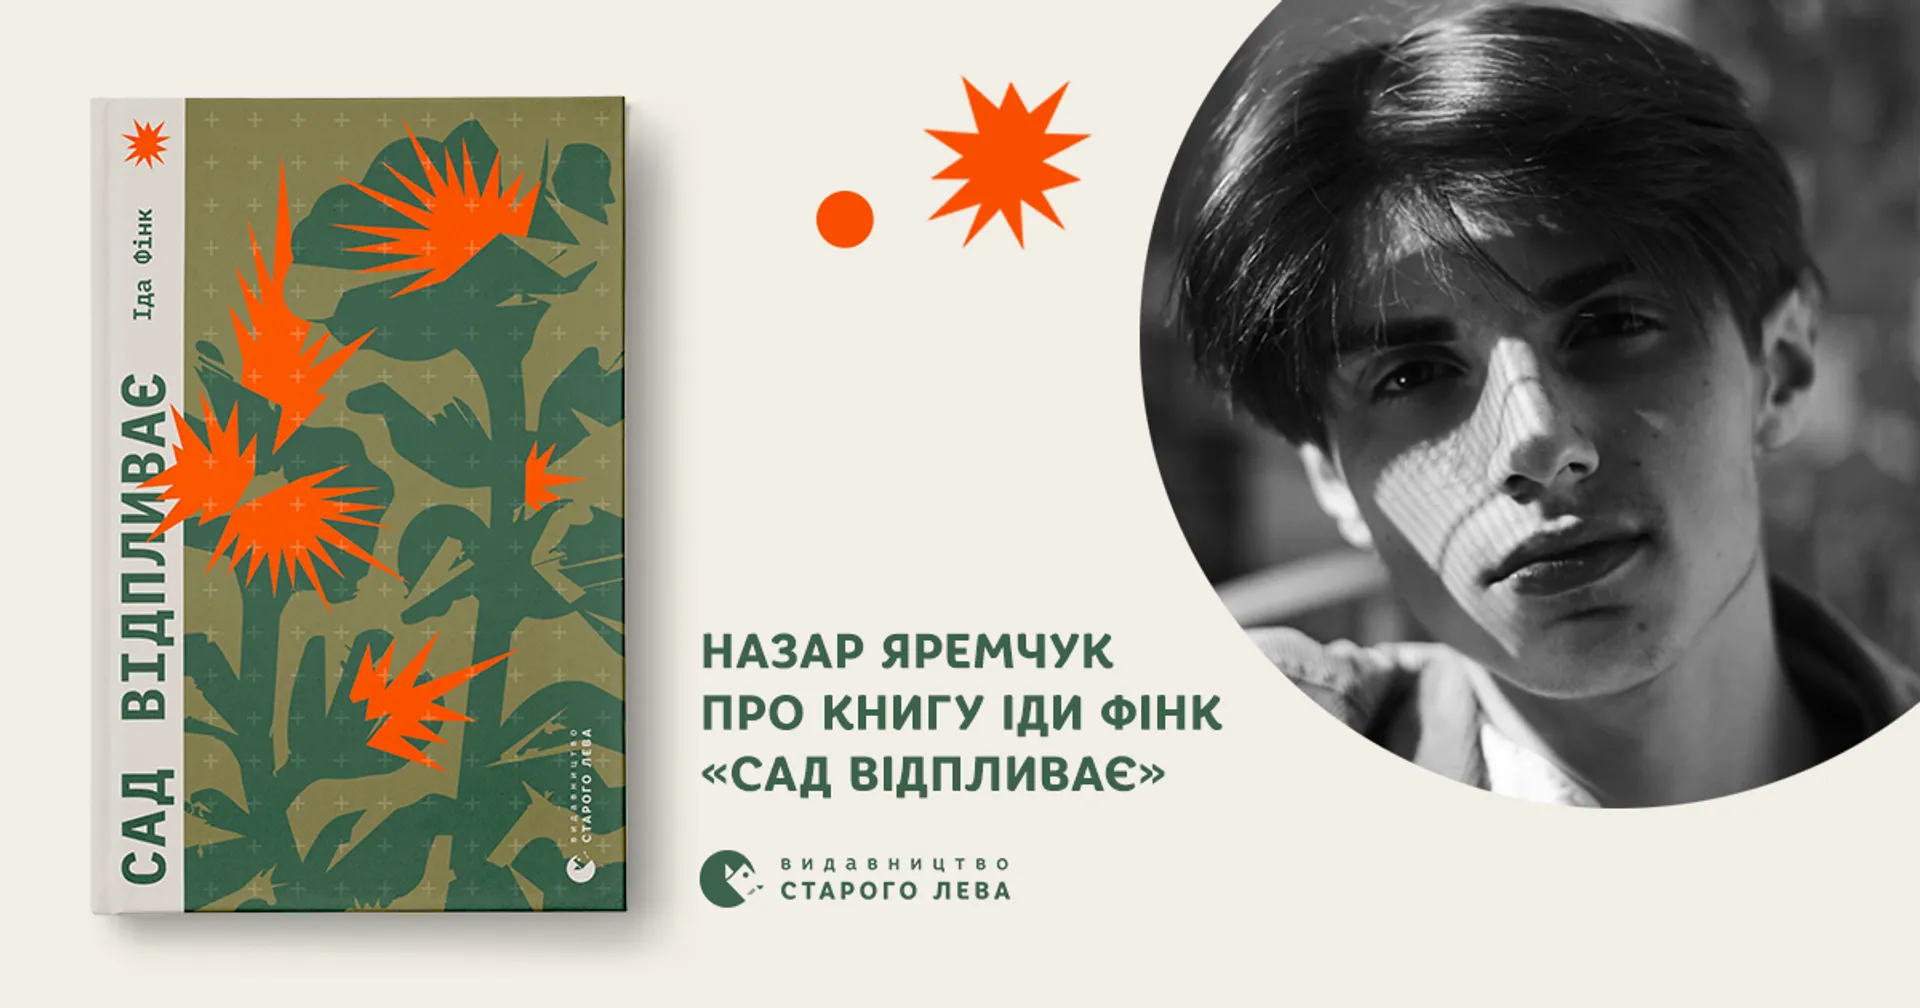 Ілюстратор Назар Яремчук про книгу Іди Фінк «Сад відпливає»